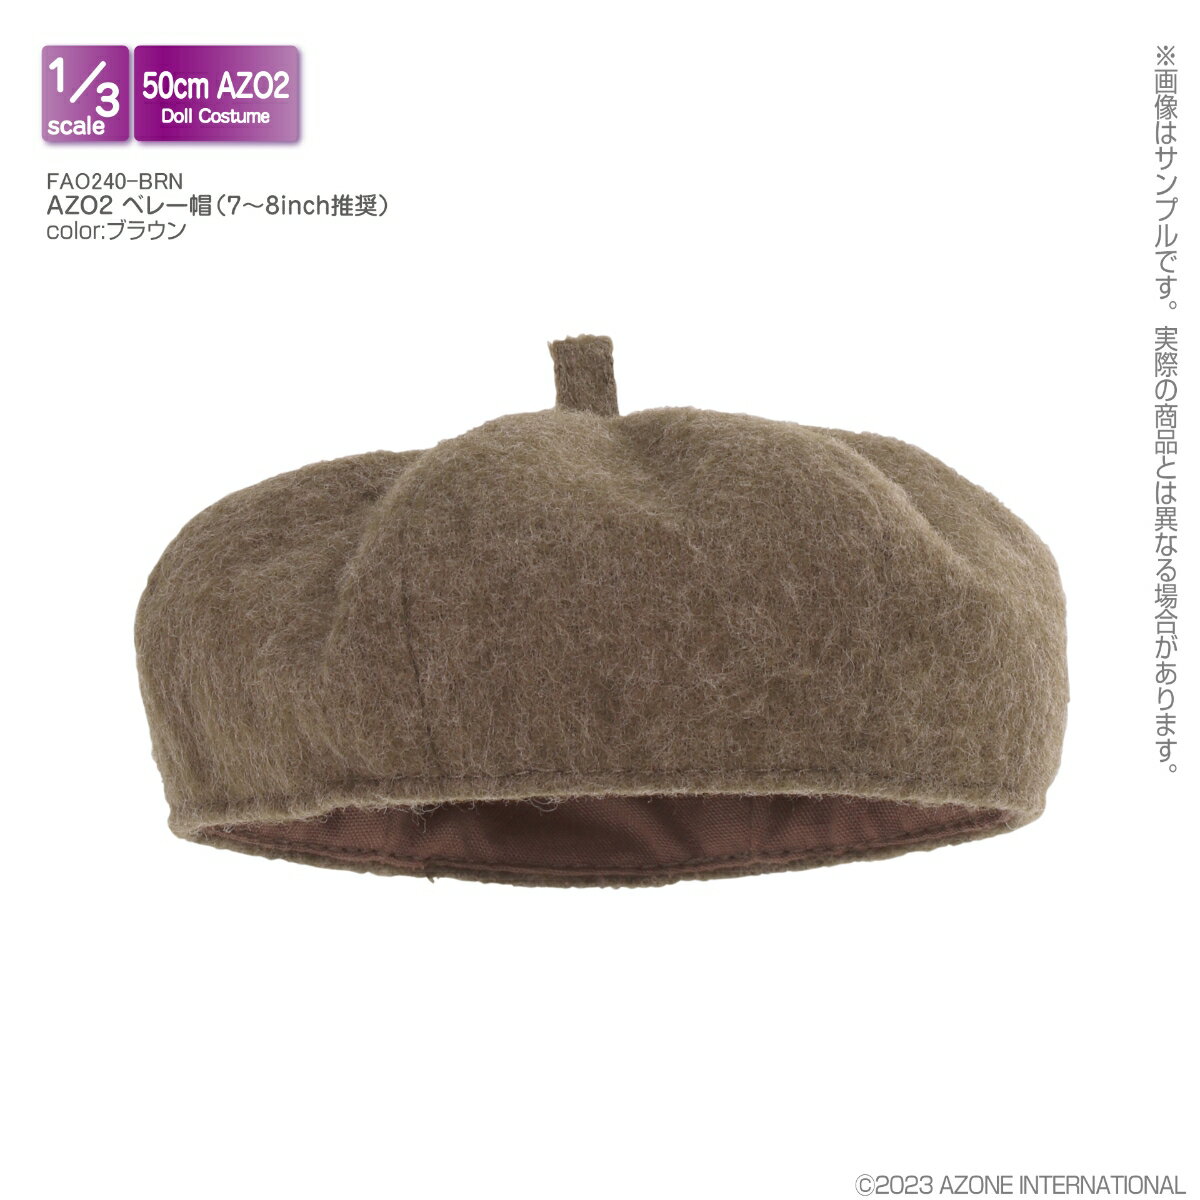 1/3 スケール用ウェア AZO2 ベレー帽 (7〜8inch推奨) ブラウン 【FAO240-BRN】 (ドール)